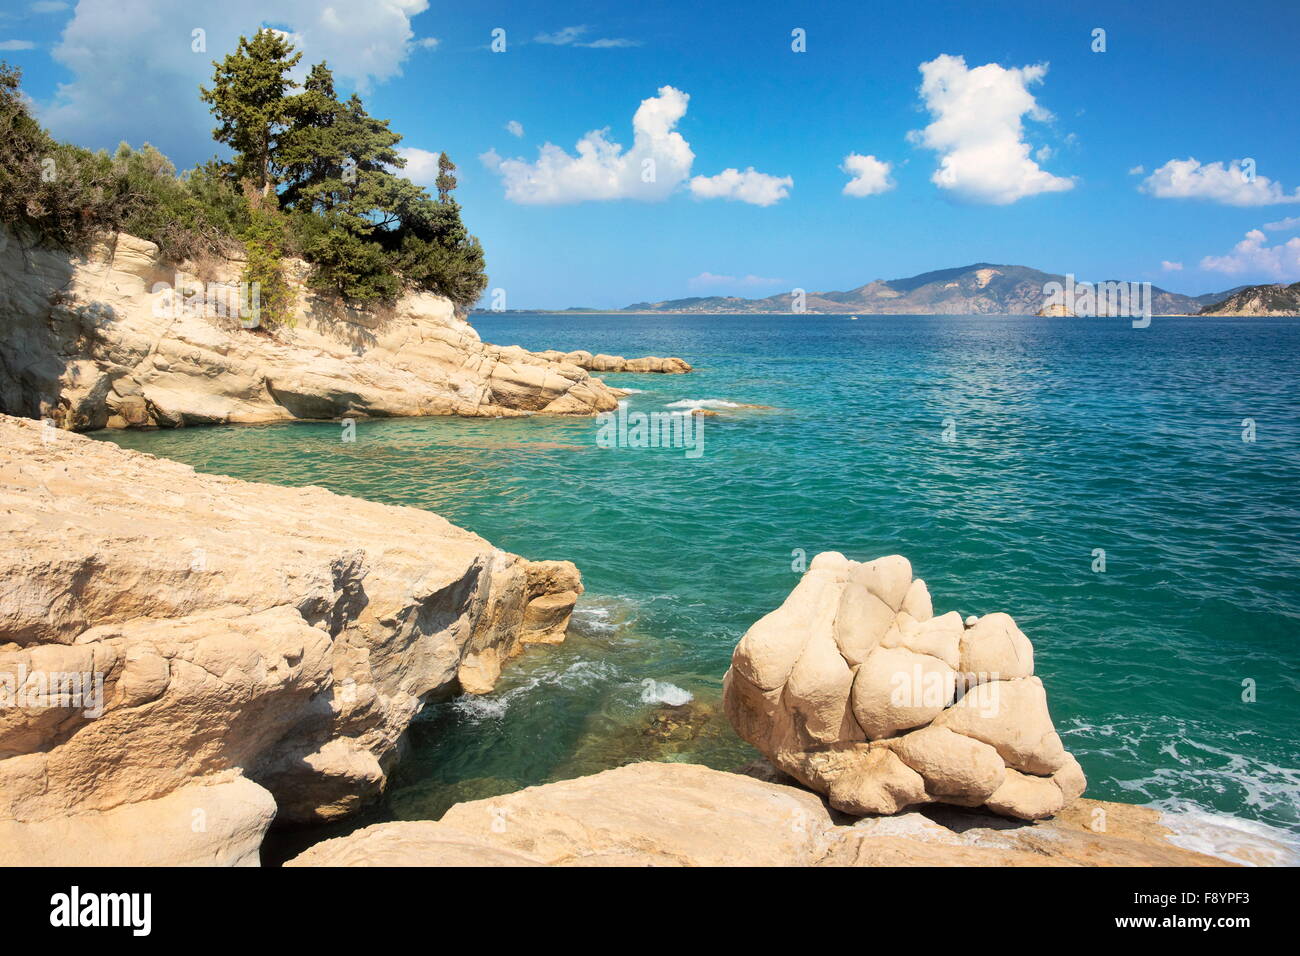 L'île de Zakynthos, Grèce - Mer Ionienne, Skopos Cape Banque D'Images